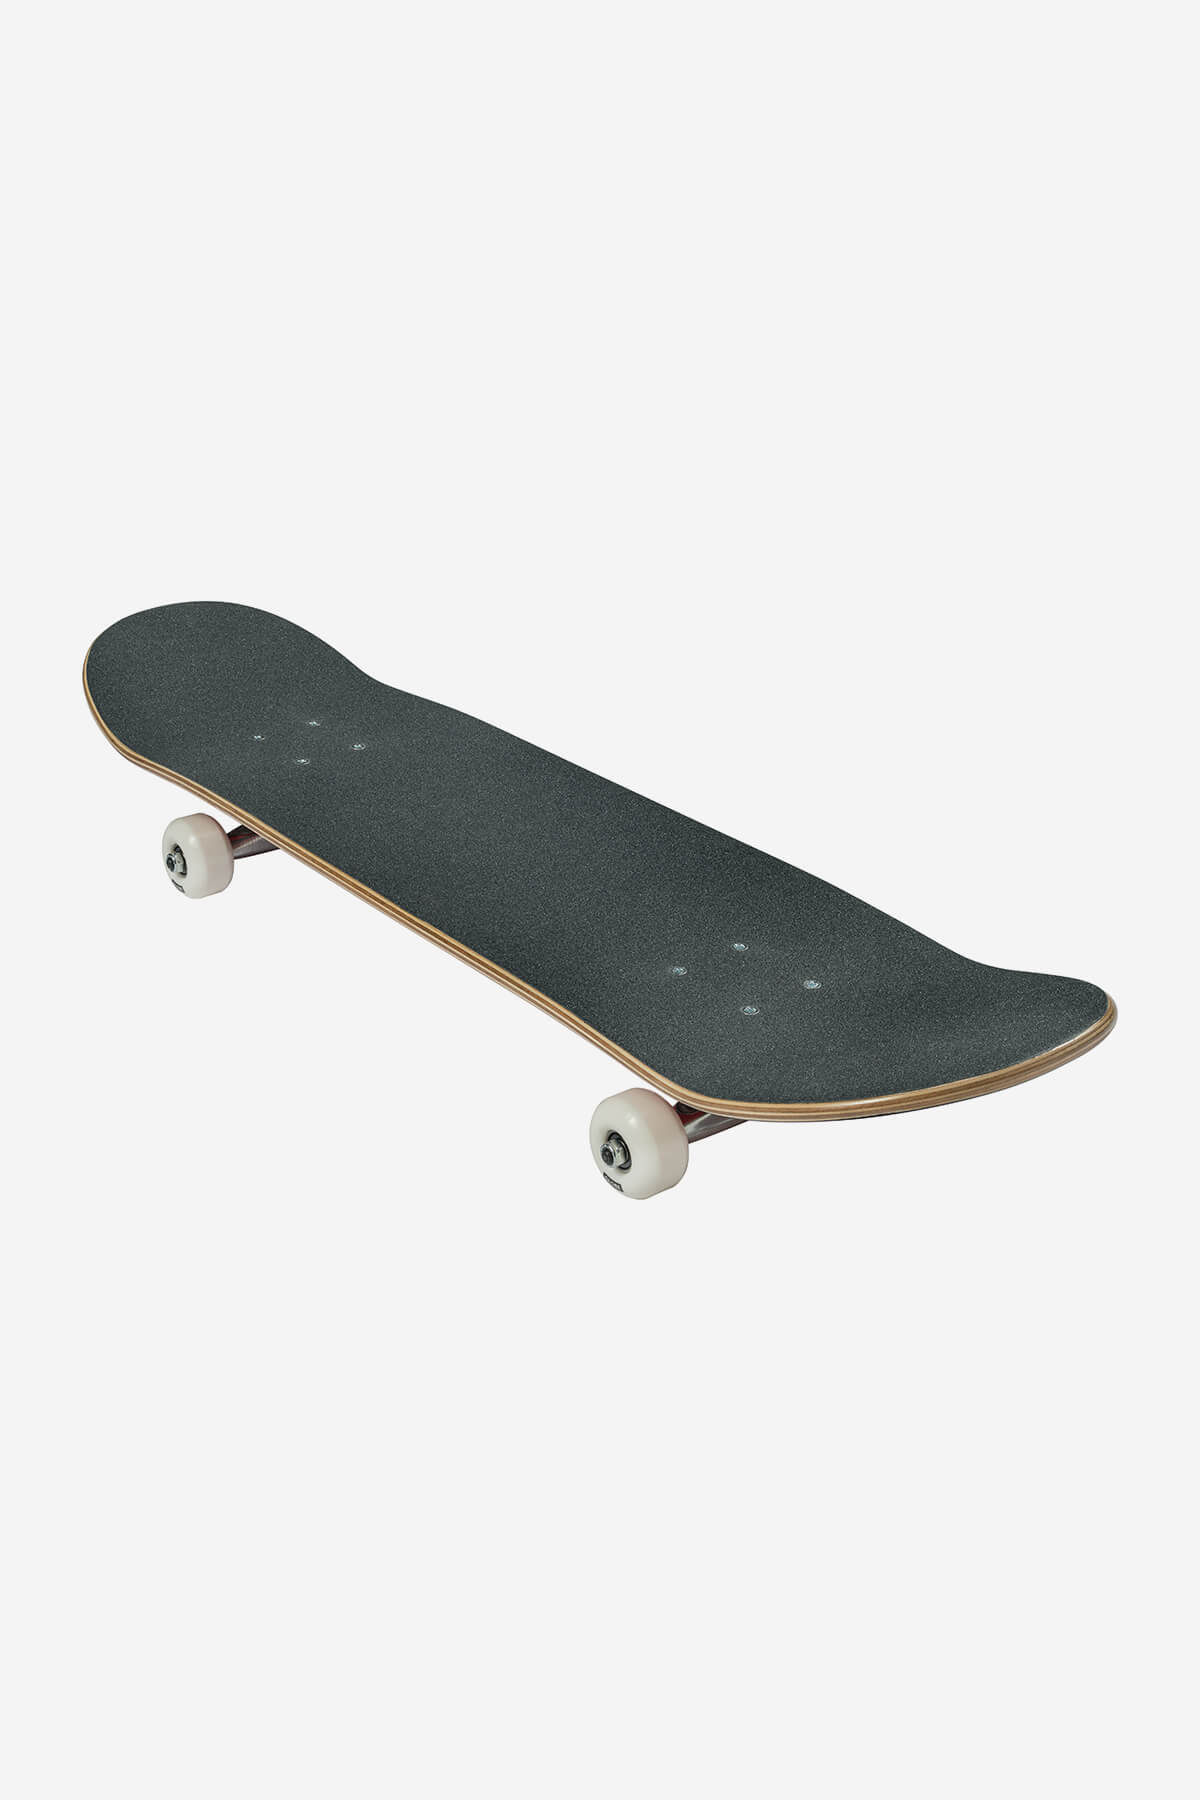 Globe Skateboard complet G0 Fubar complet 7.75" complet Skateboard en noir/Red